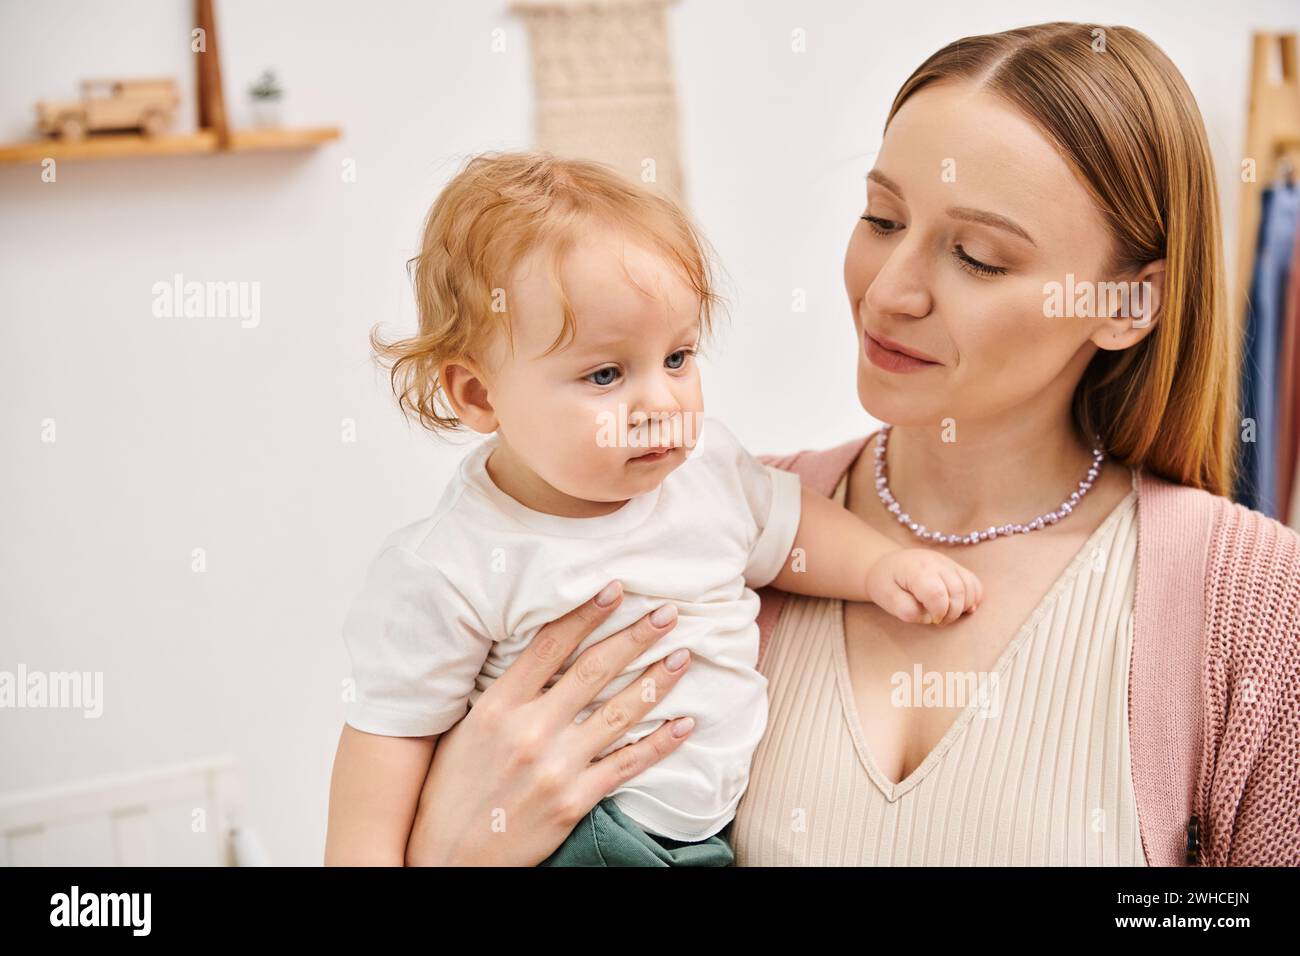 Fröhliche, attraktive Frau, die einen kleinen Kleinkinder in den Händen hält, im Kinderzimmer, glückliche Mutterschaft Stockfoto